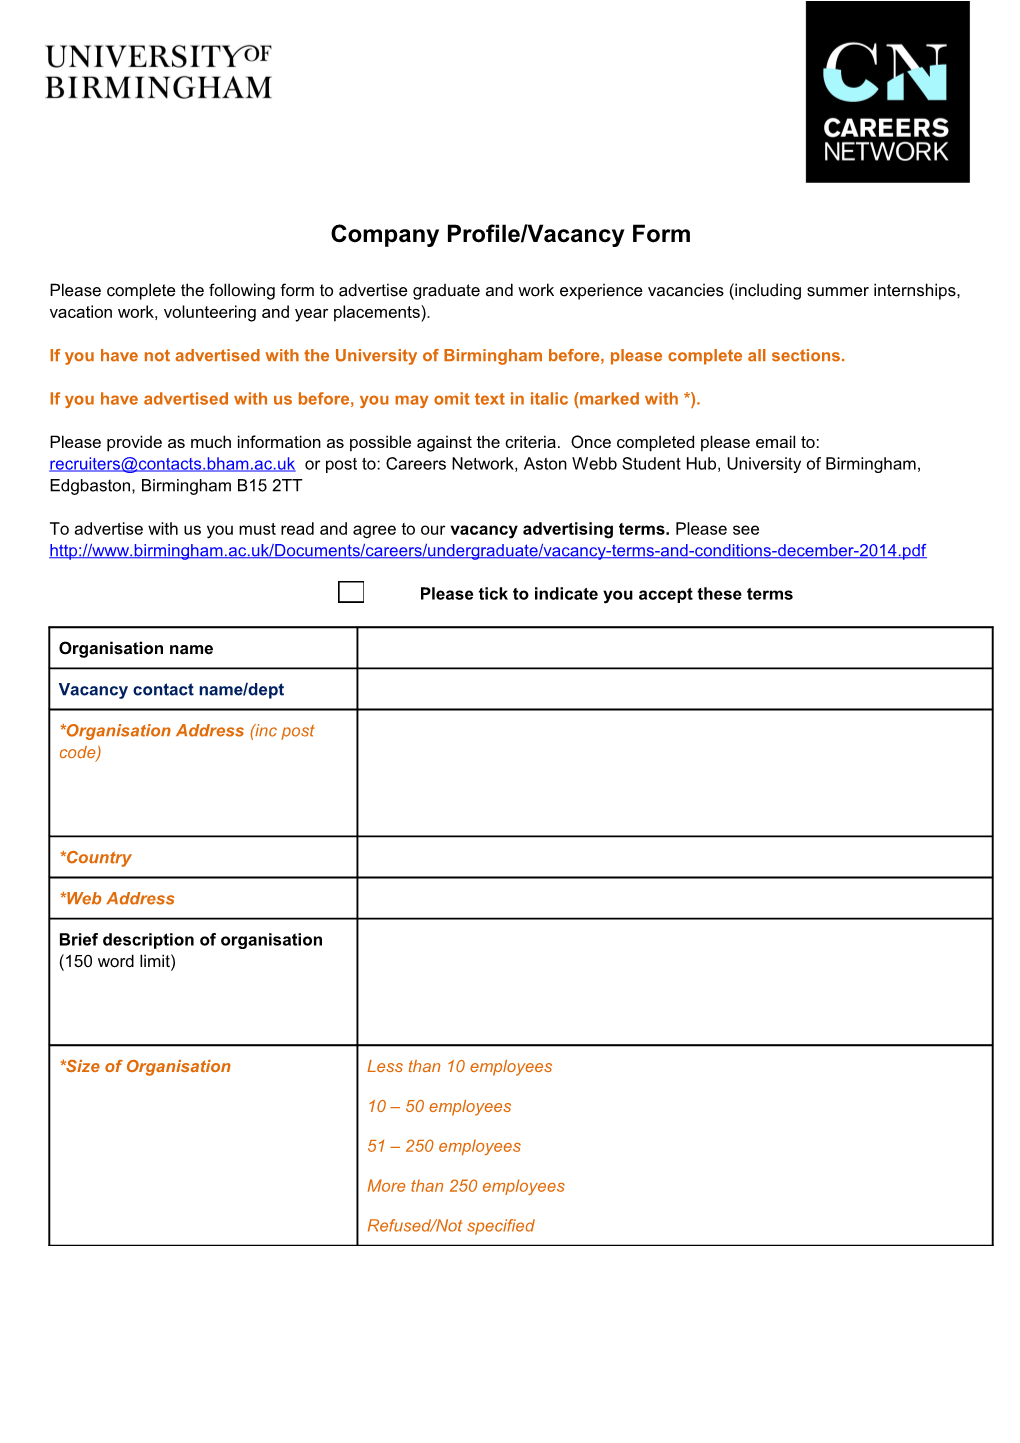 Company Profile/Vacancy Form